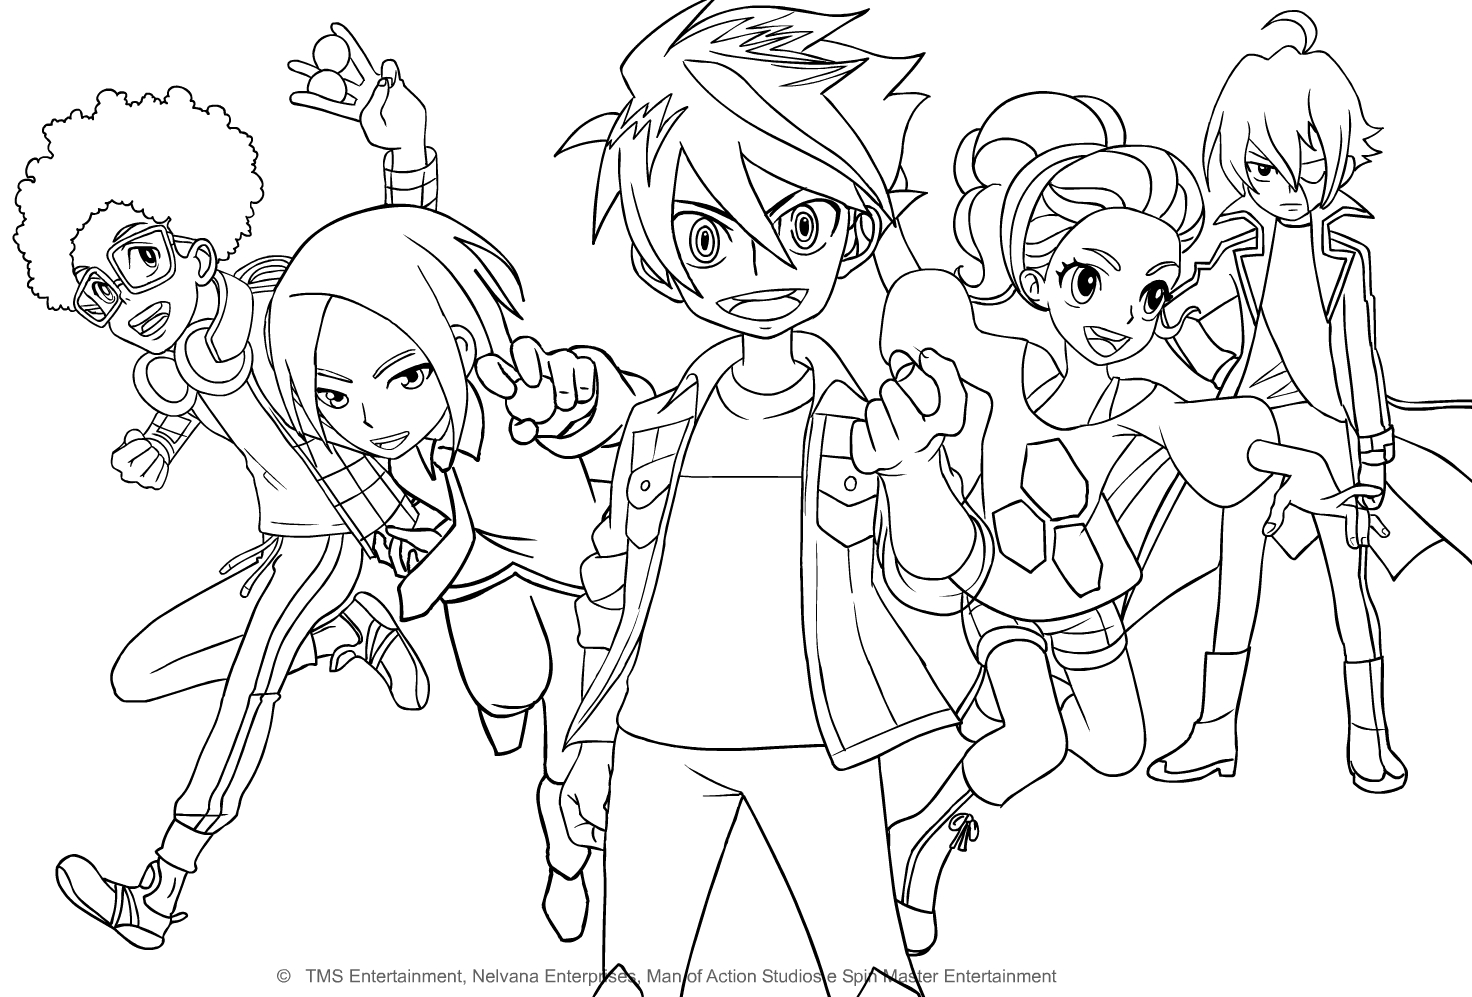 Disegno di personaggi di Bakugan Battle Planet da stampare e colorare